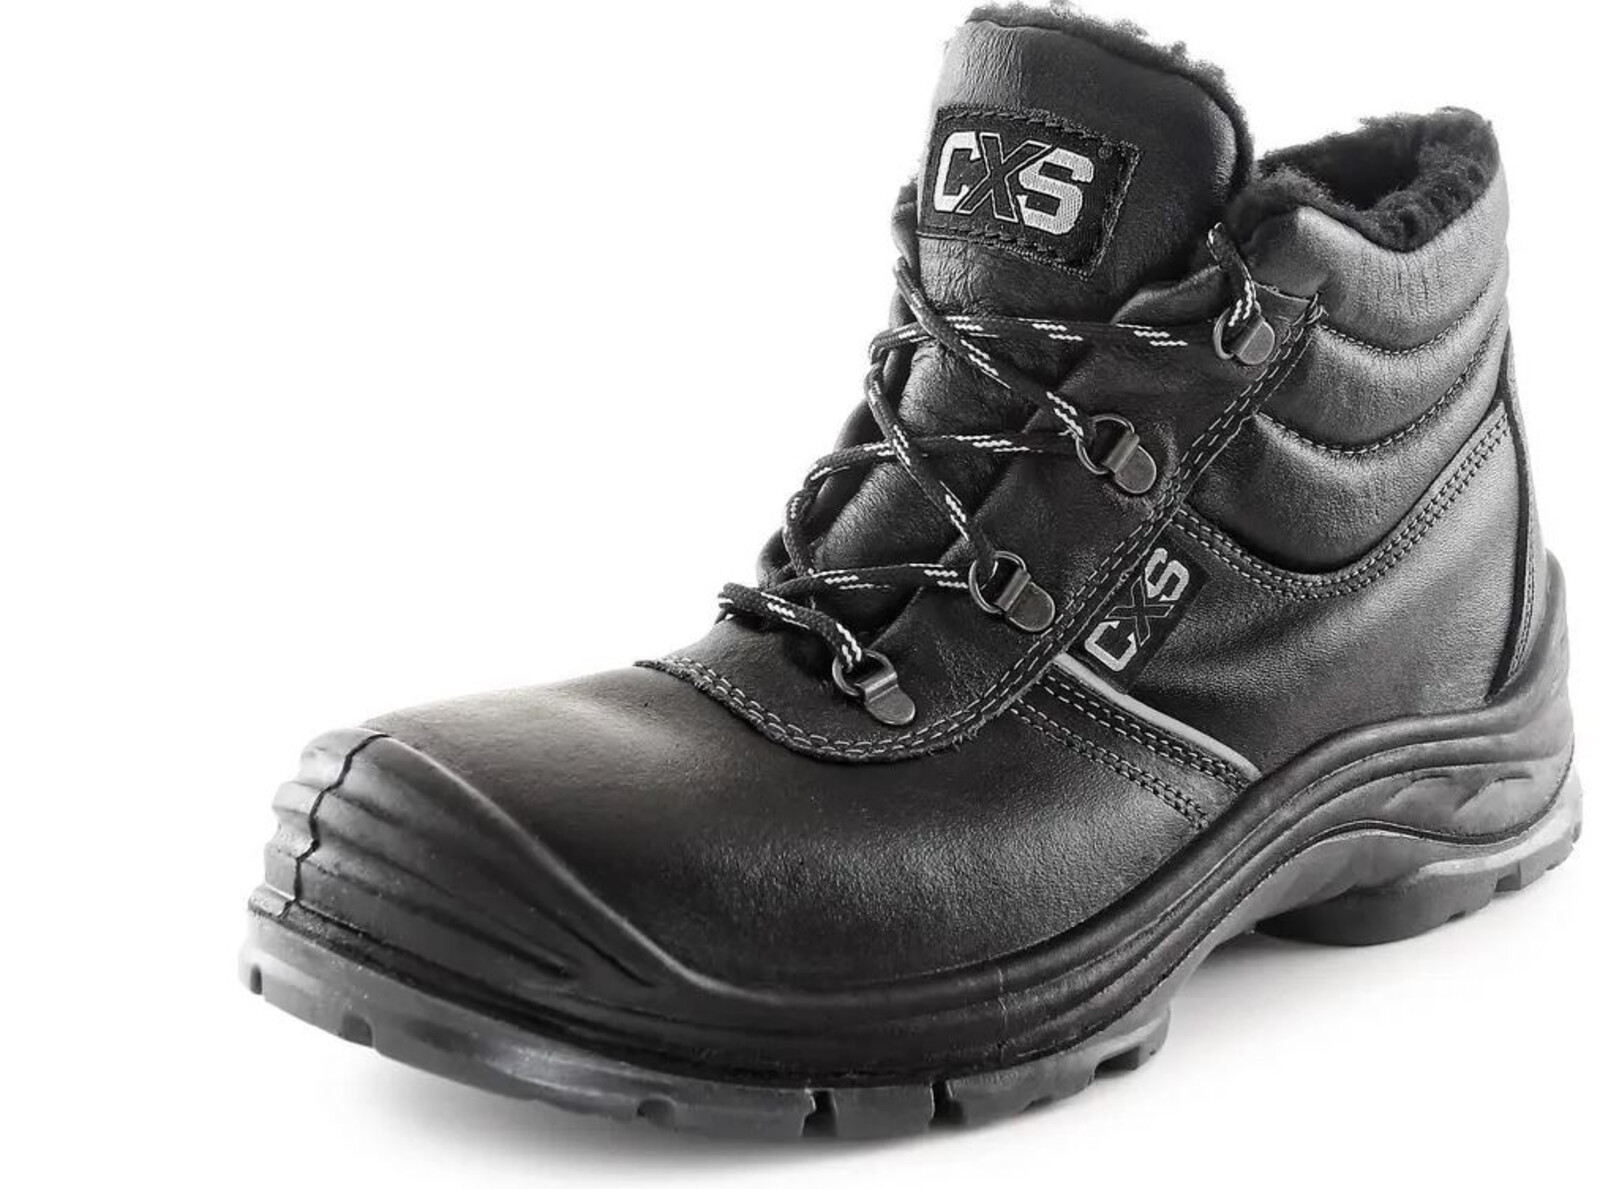 Zimná bezpečnostná členková obuv CXS Safety Steel Nickel S3 - veľkosť: 39, farba: čierna